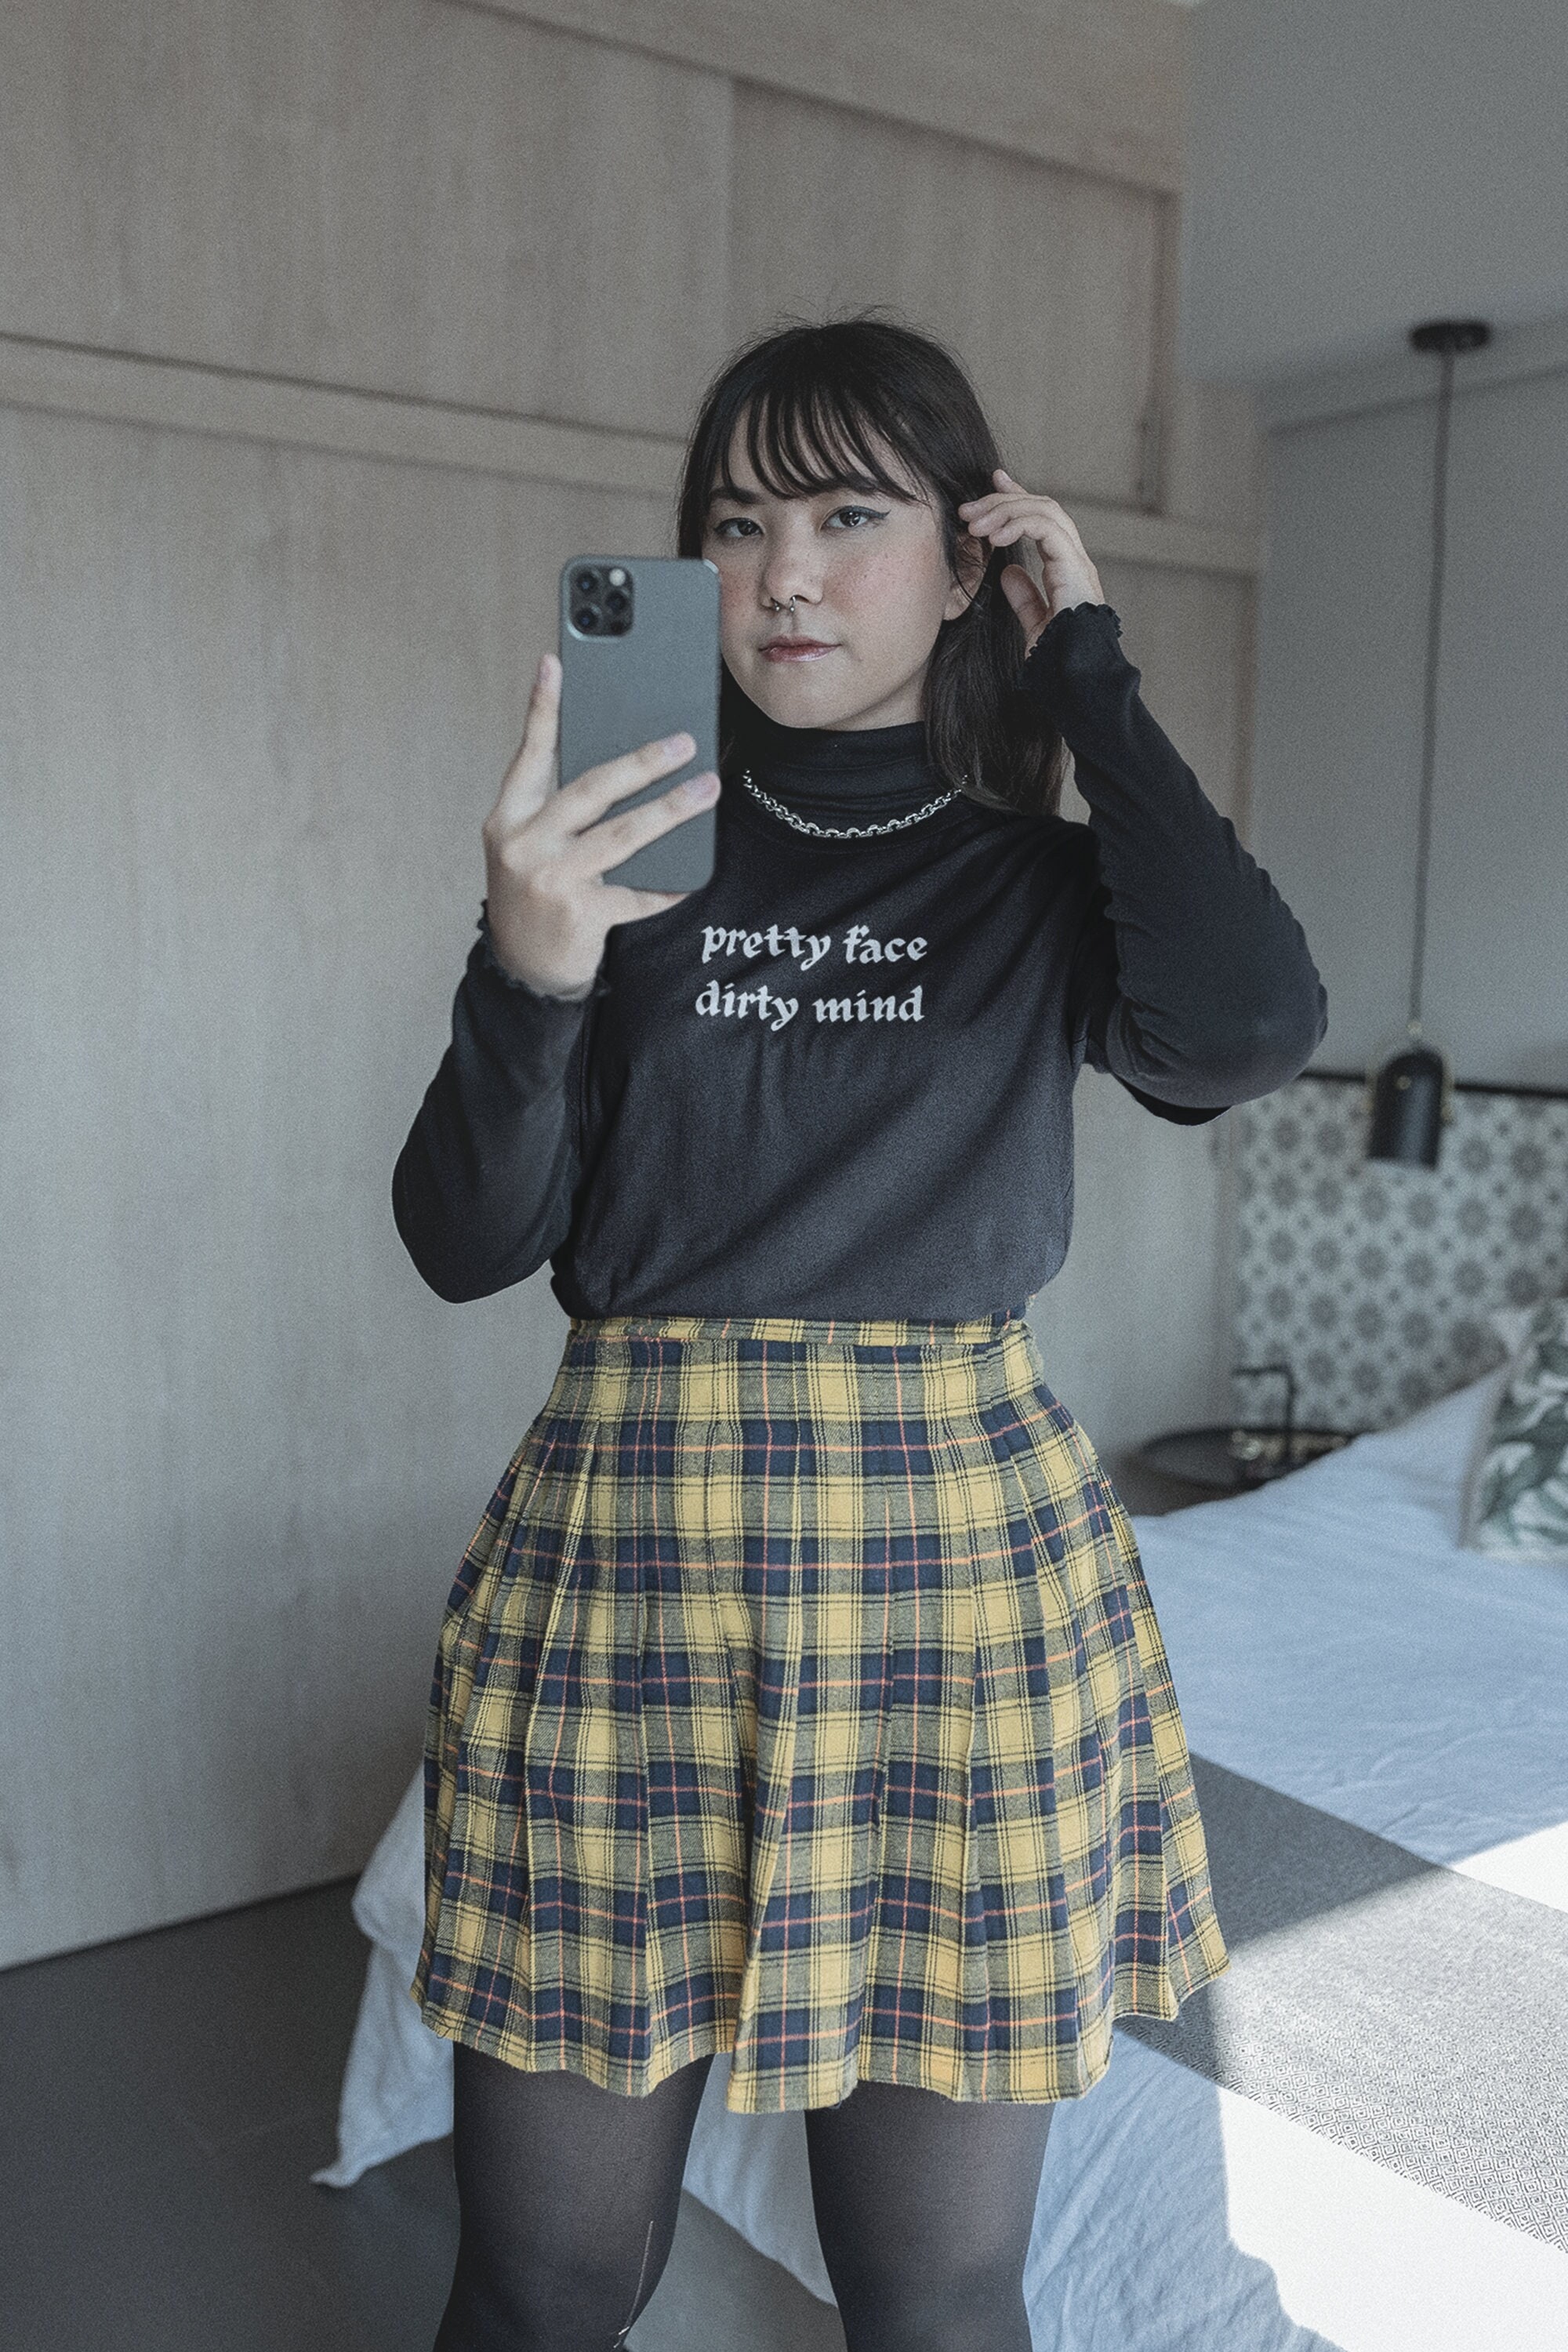 Edgy E Girl Clothing Plus Size Grunge Shirt, Oversized Alt Goth